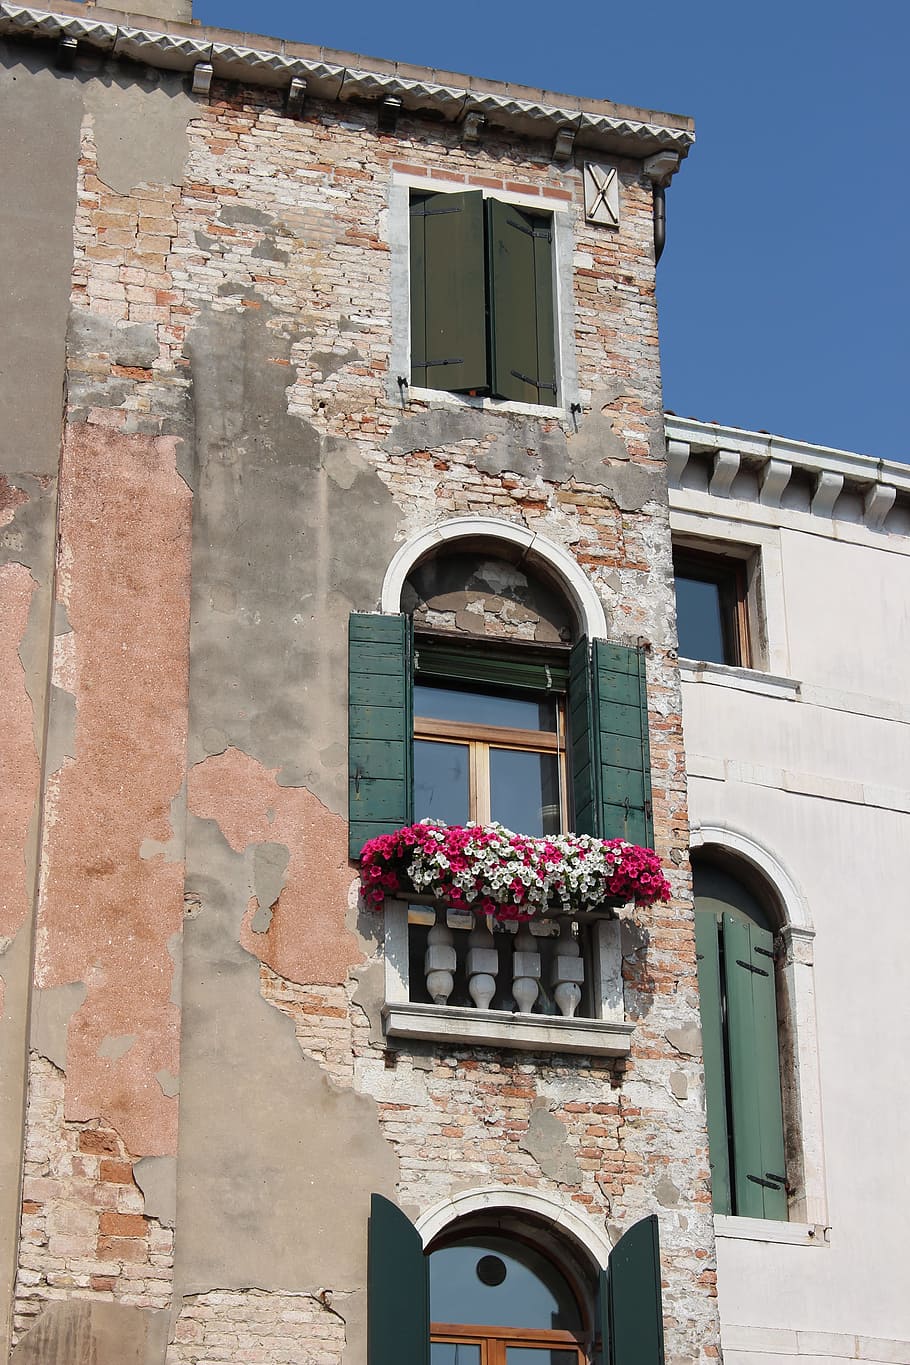 イタリア 建築 窓 花 古い建物 シャッター イタリア語 旅行 ランドマーク ヨーロッパ Pxfuel